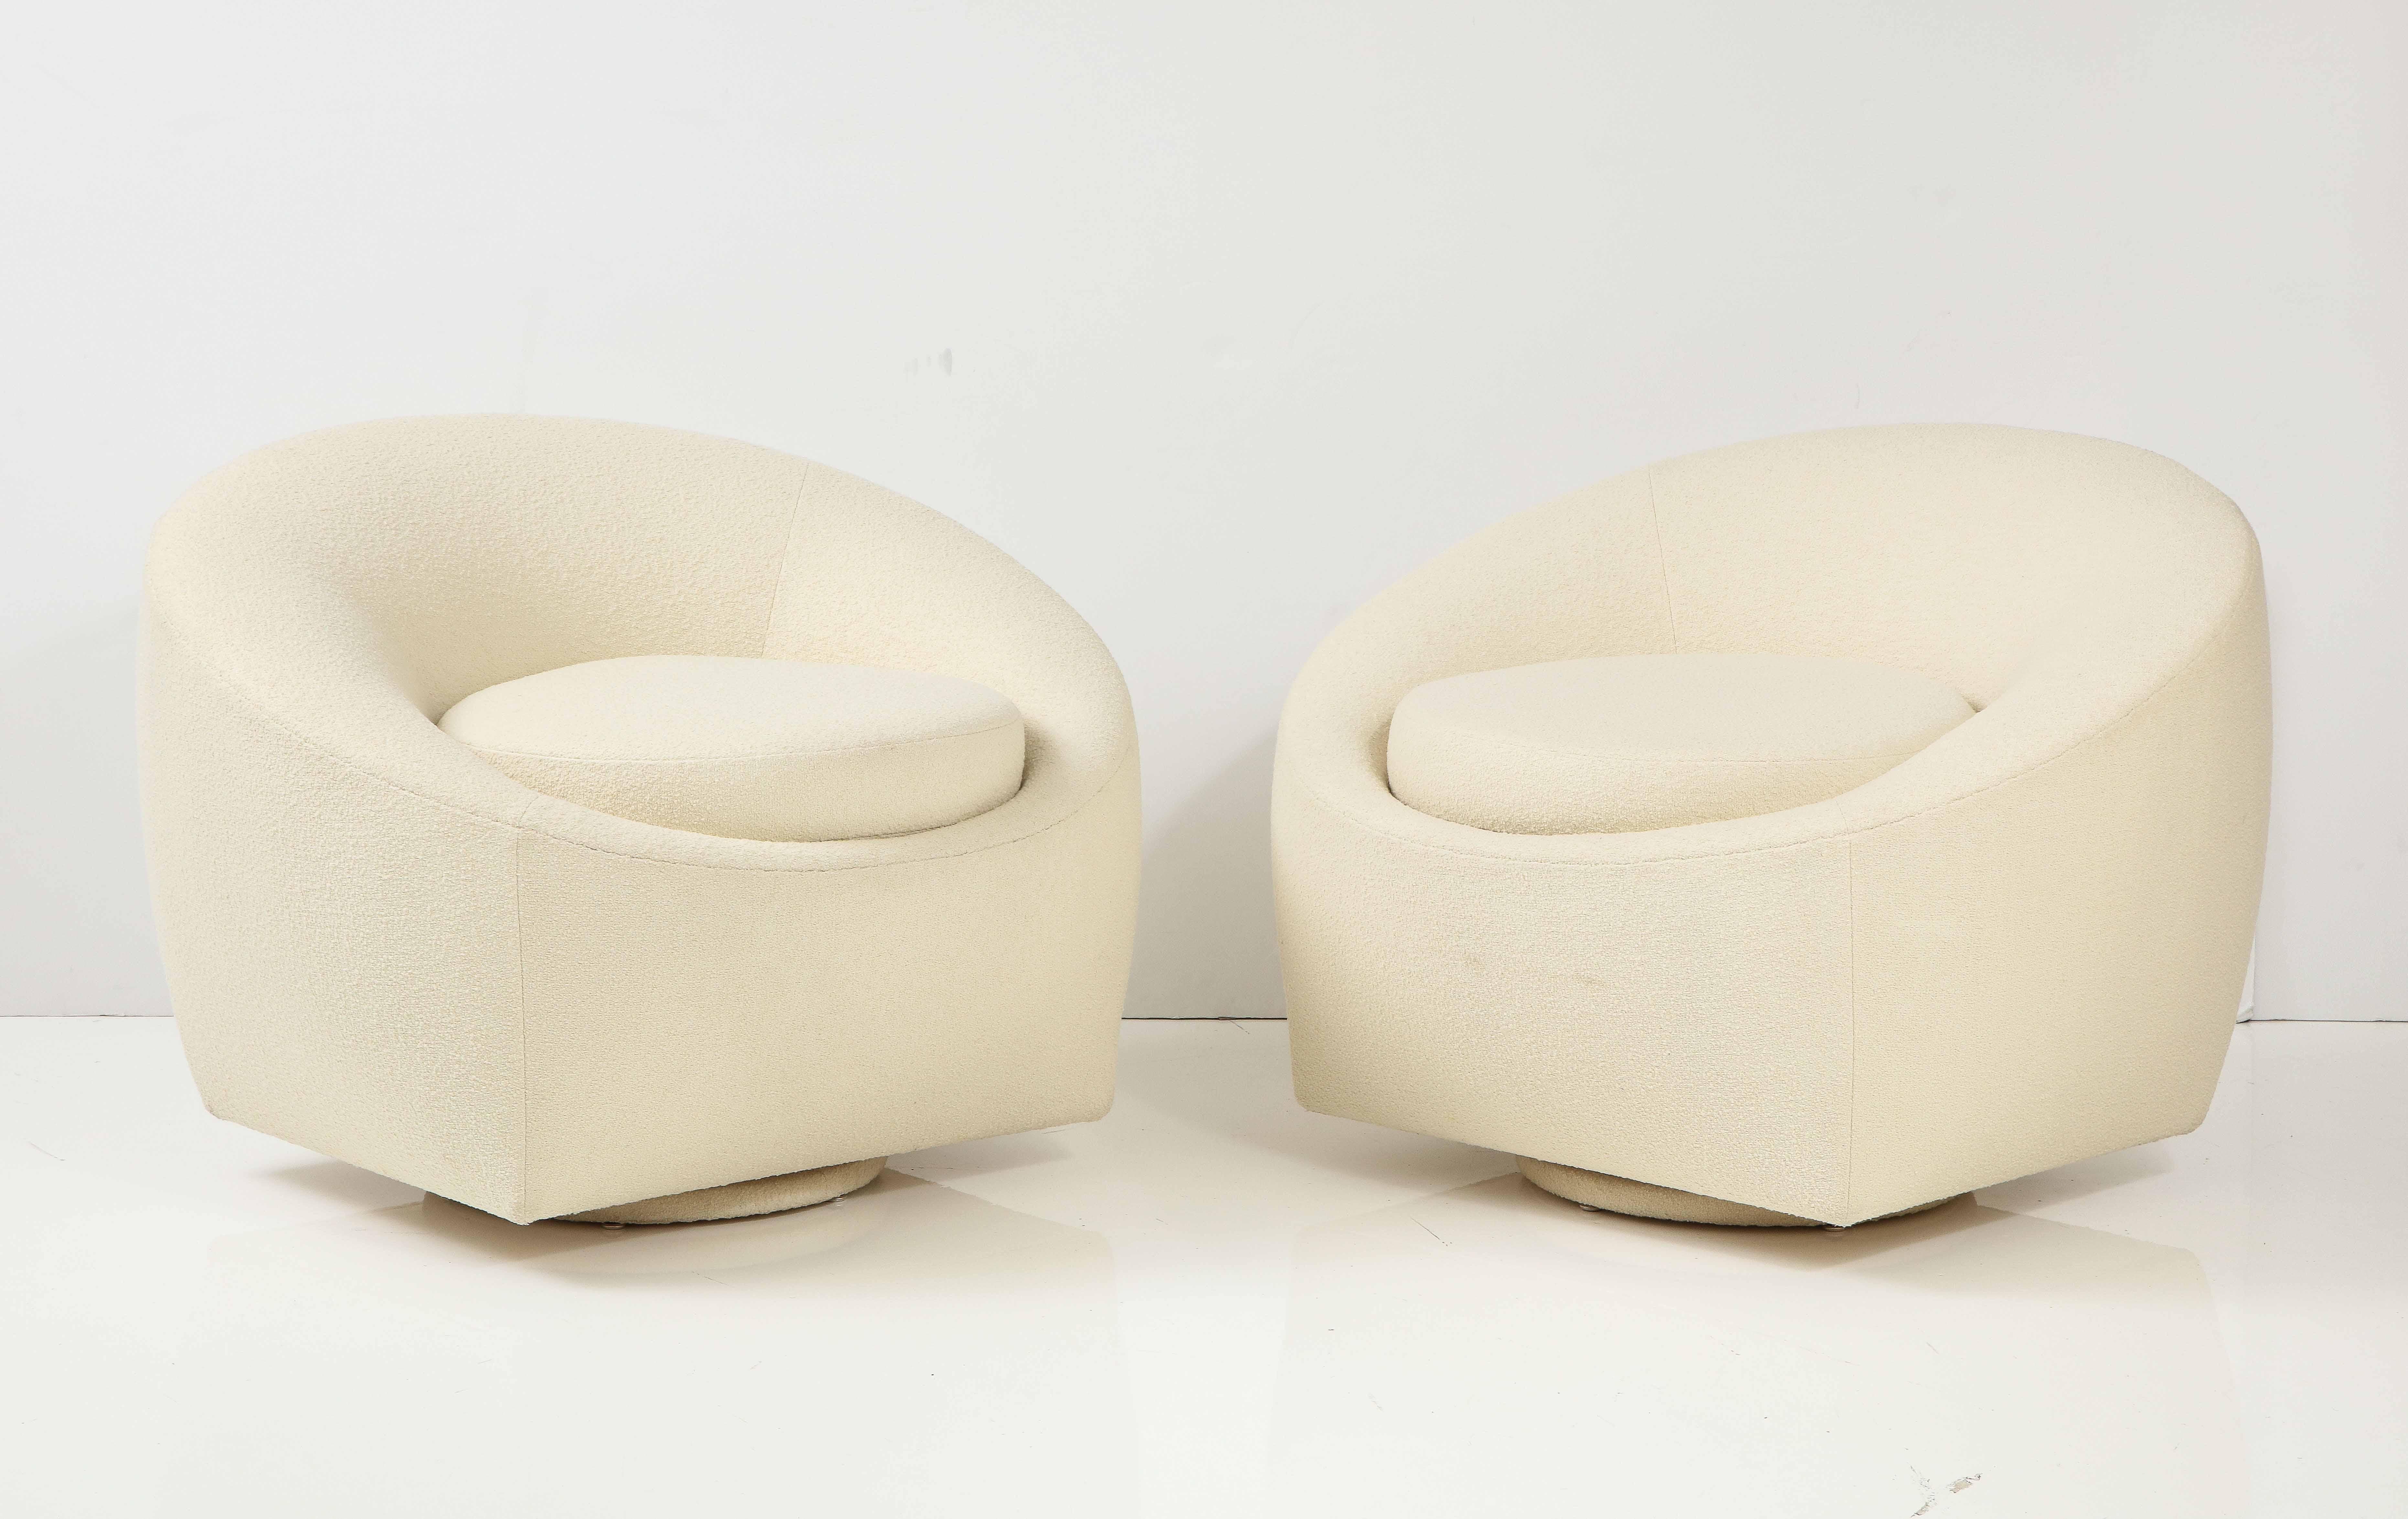 Ein Paar modernistische Club-Drehstühle aus den 1970er Jahren.
Die Stühle wurden mit dem elfenbeinfarbenen Boucle-Stoff von Knoll neu gepolstert und stehen auf drehbaren Gestellen.